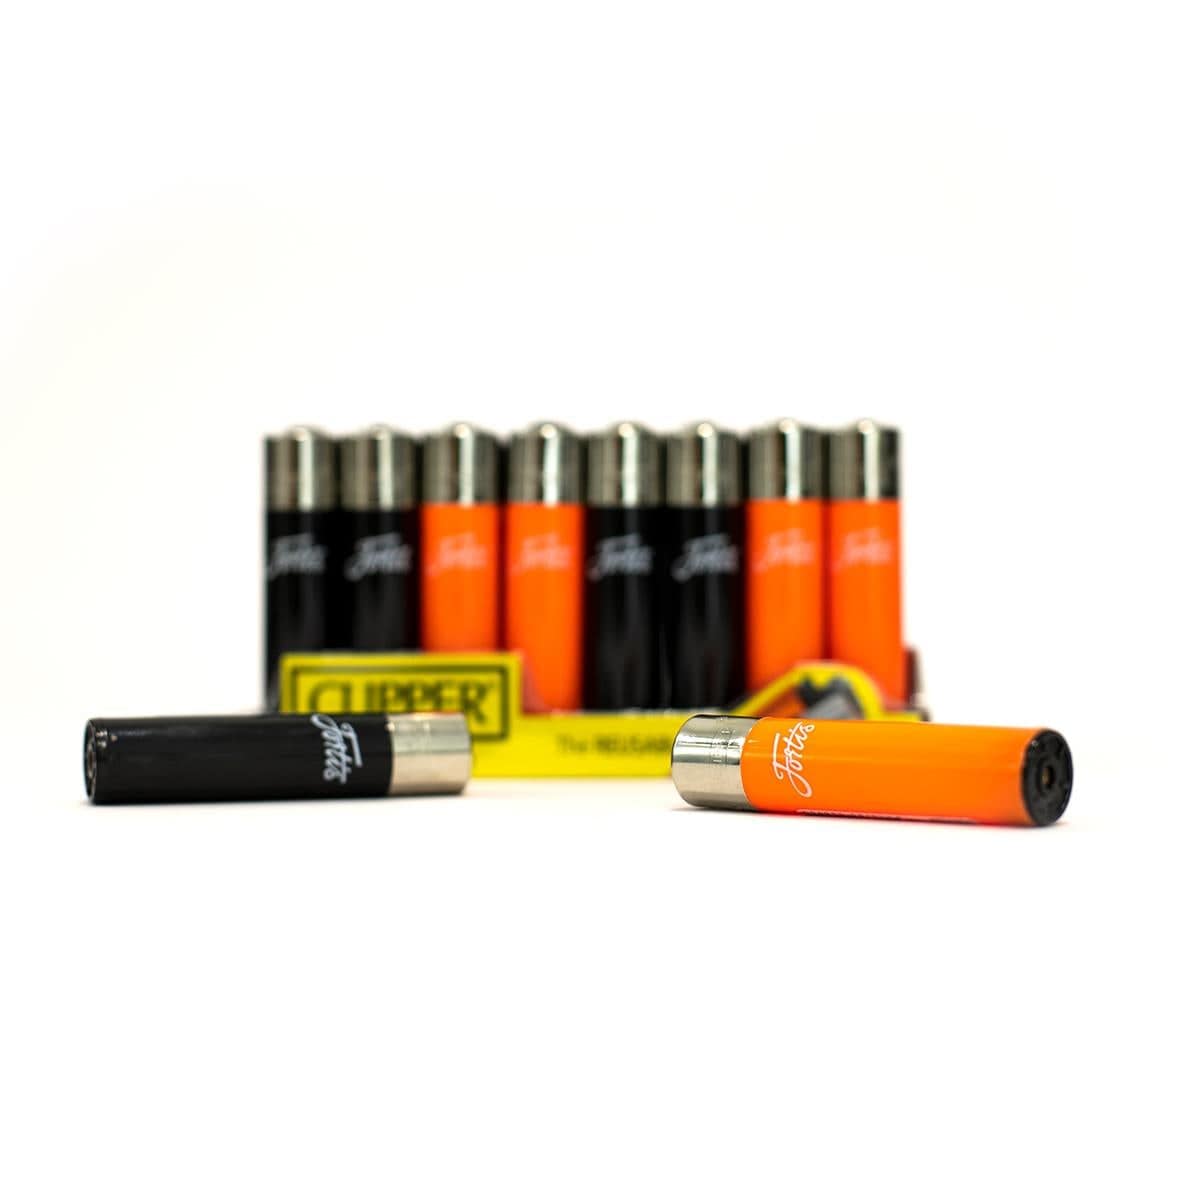 Fortis Flipper Lighter - Black & Orange.